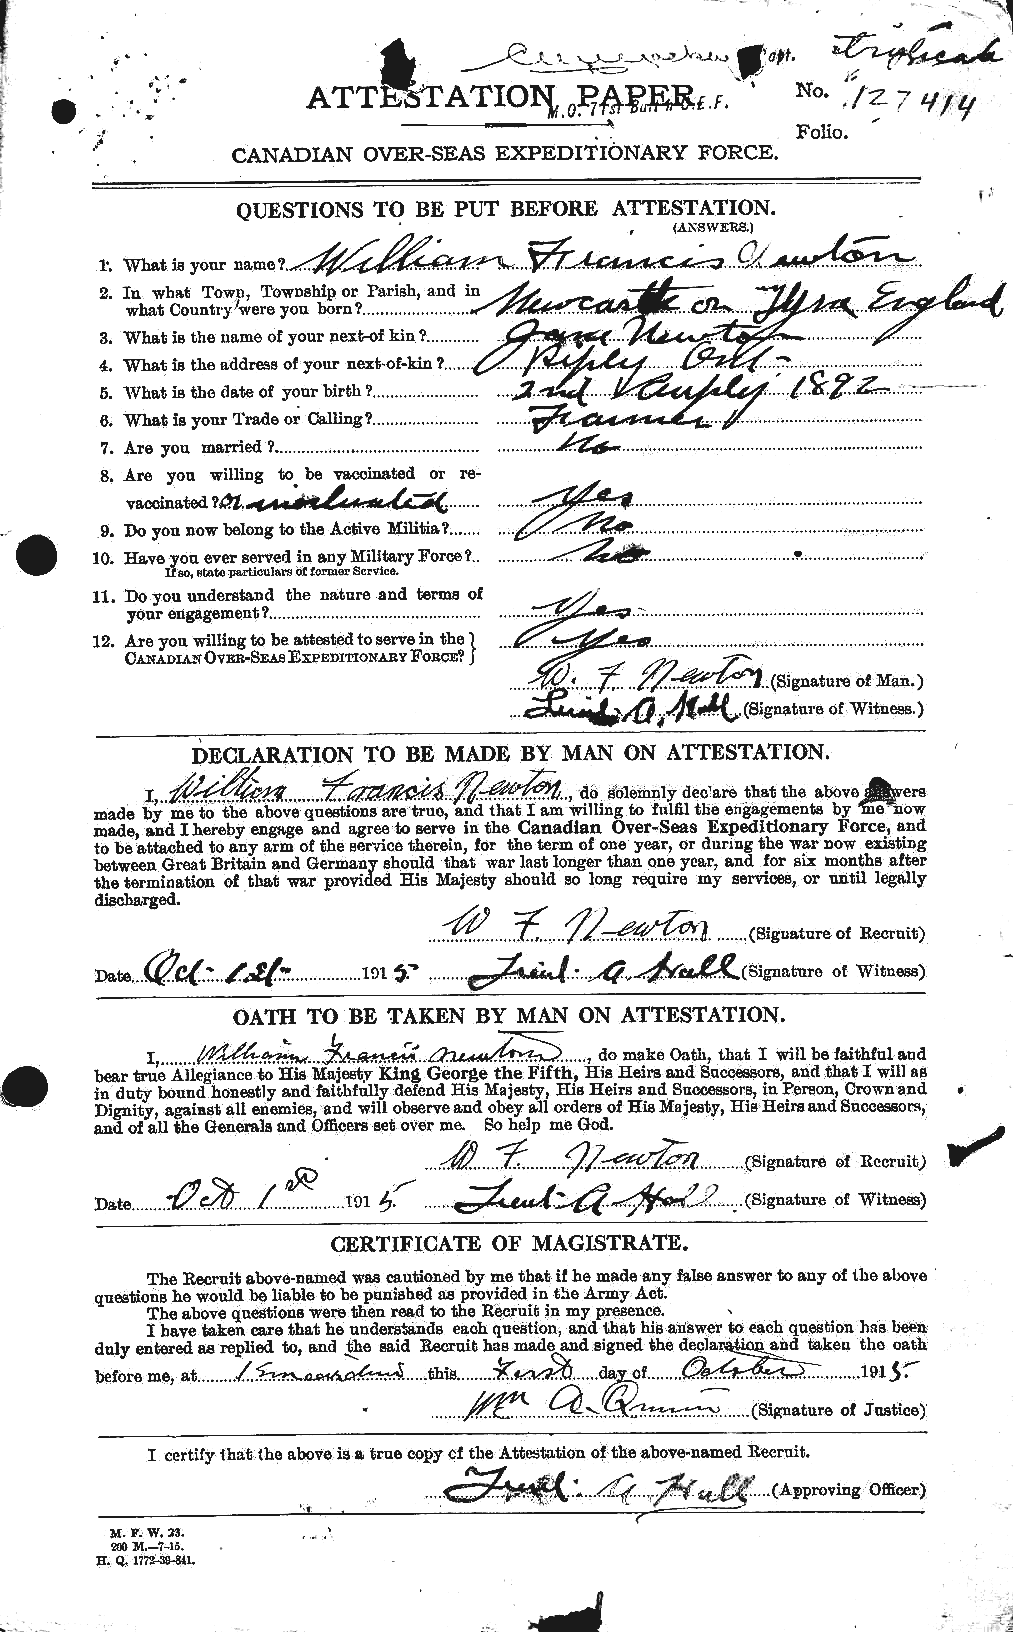 Dossiers du Personnel de la Première Guerre mondiale - CEC 556055a